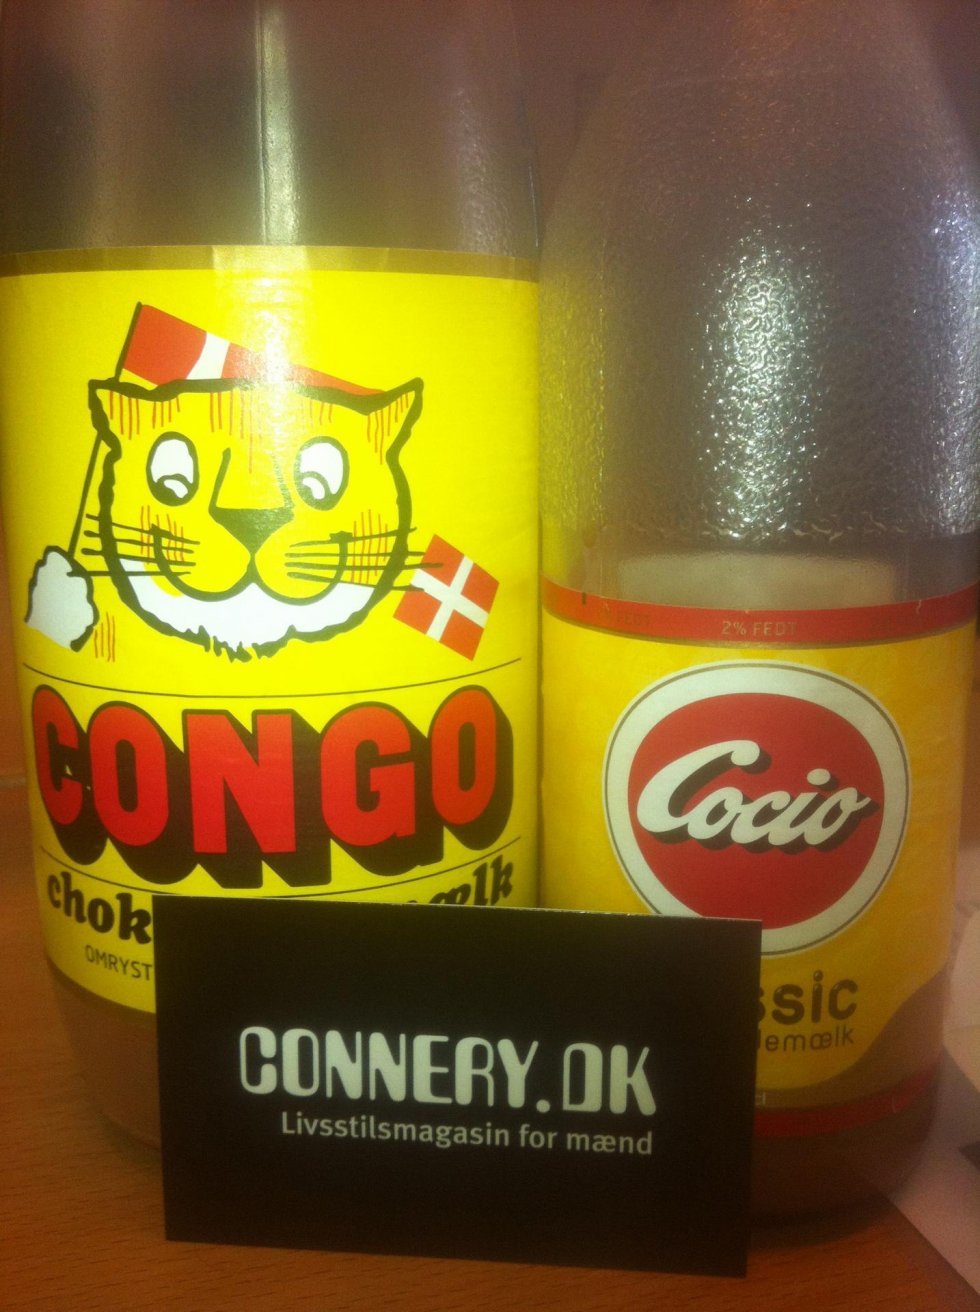 Cocio vs. Congo